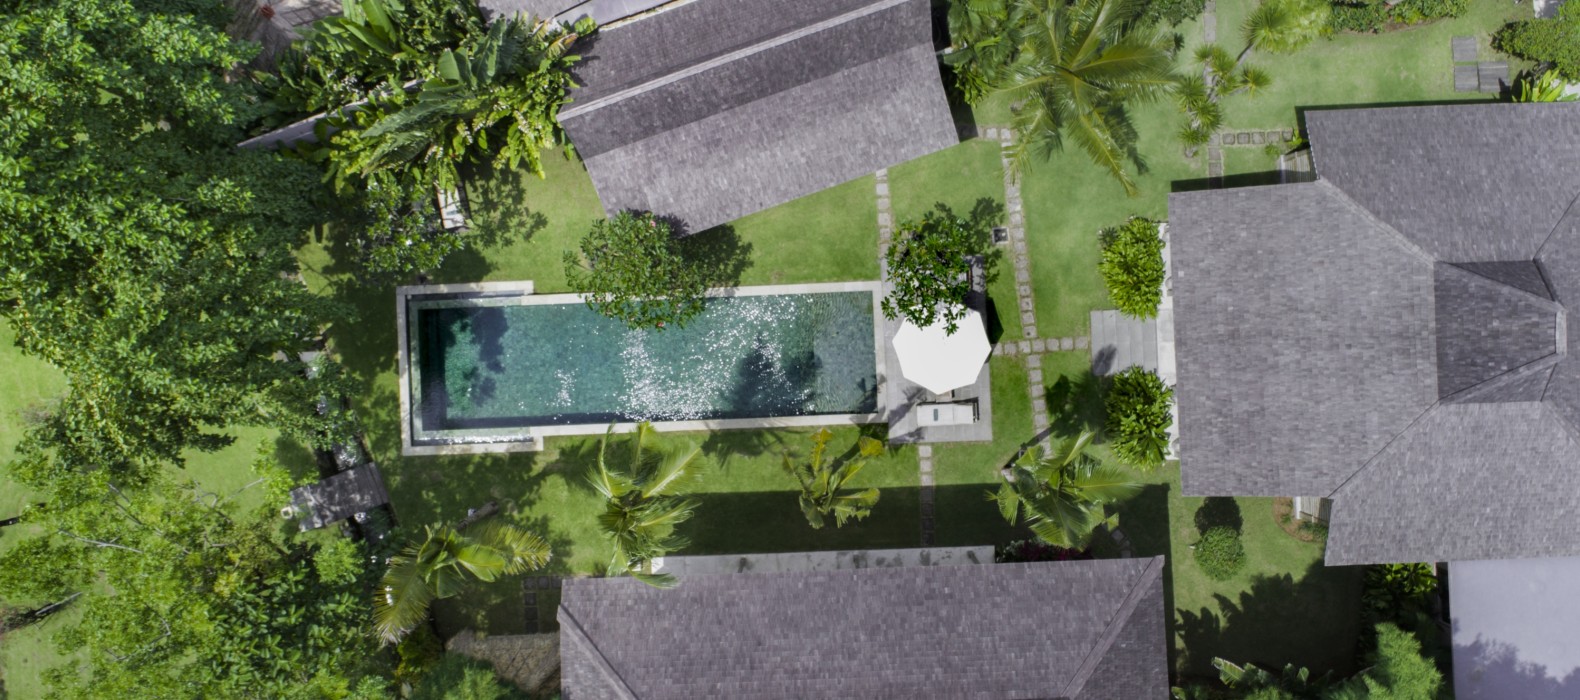 Exterior pool view of Villa Alea in Bali